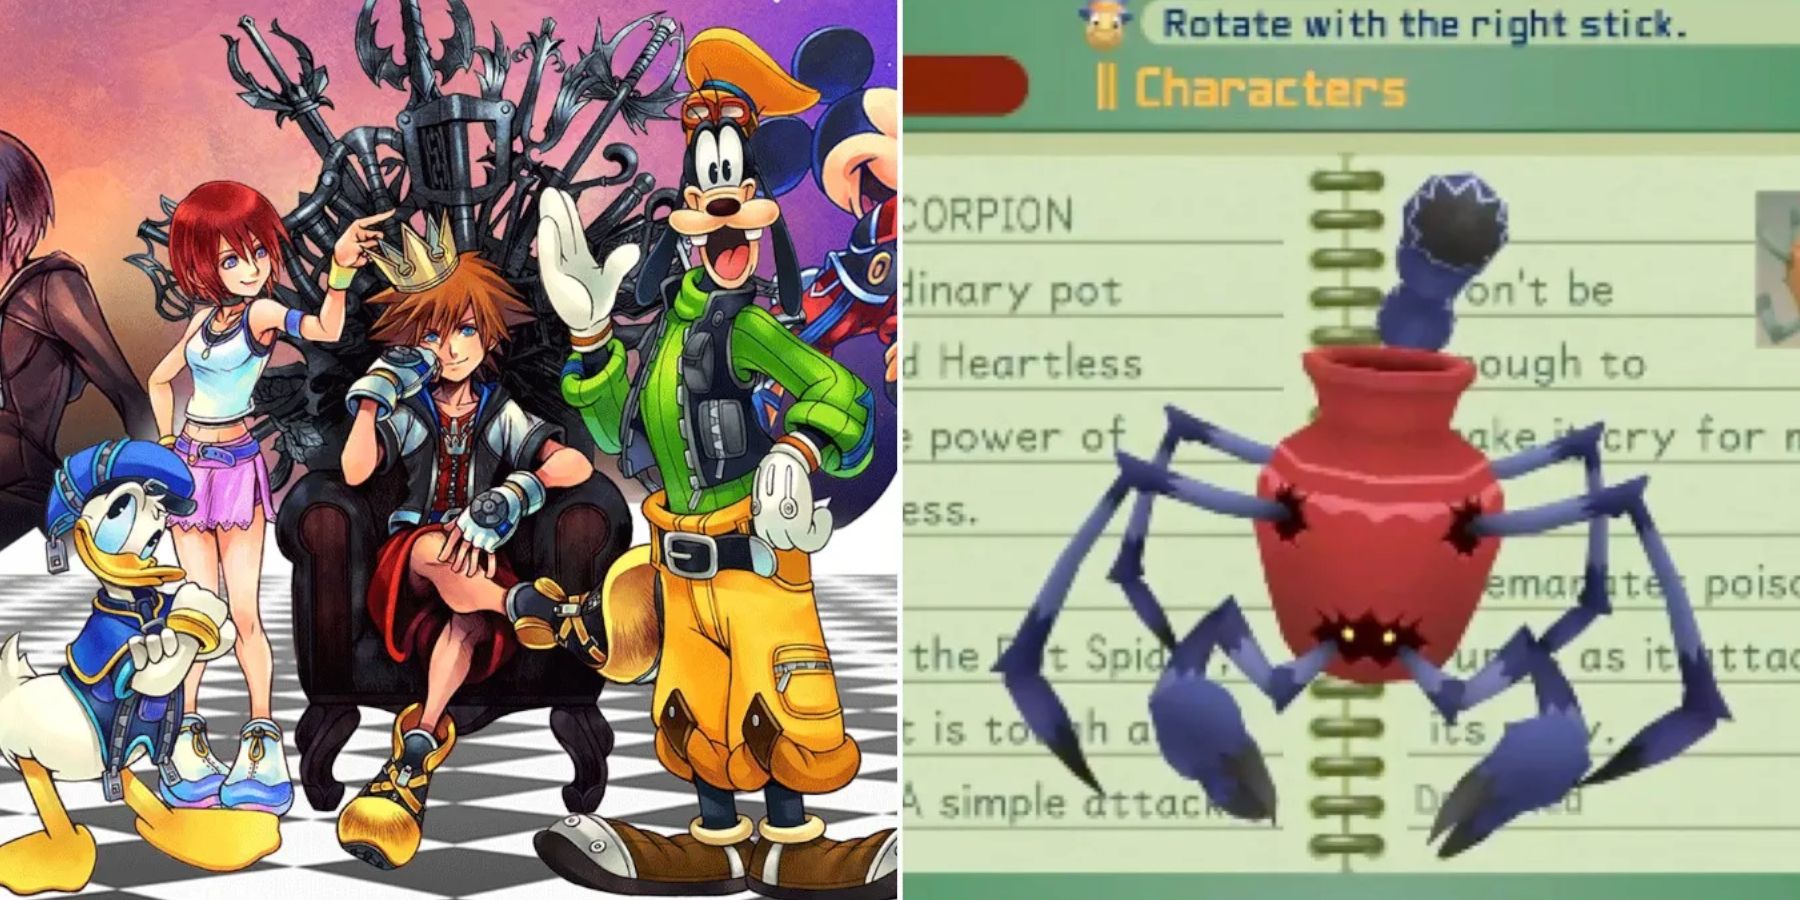 Kingdom Hearts Sora, Goofy and Donald and the pot scorpion